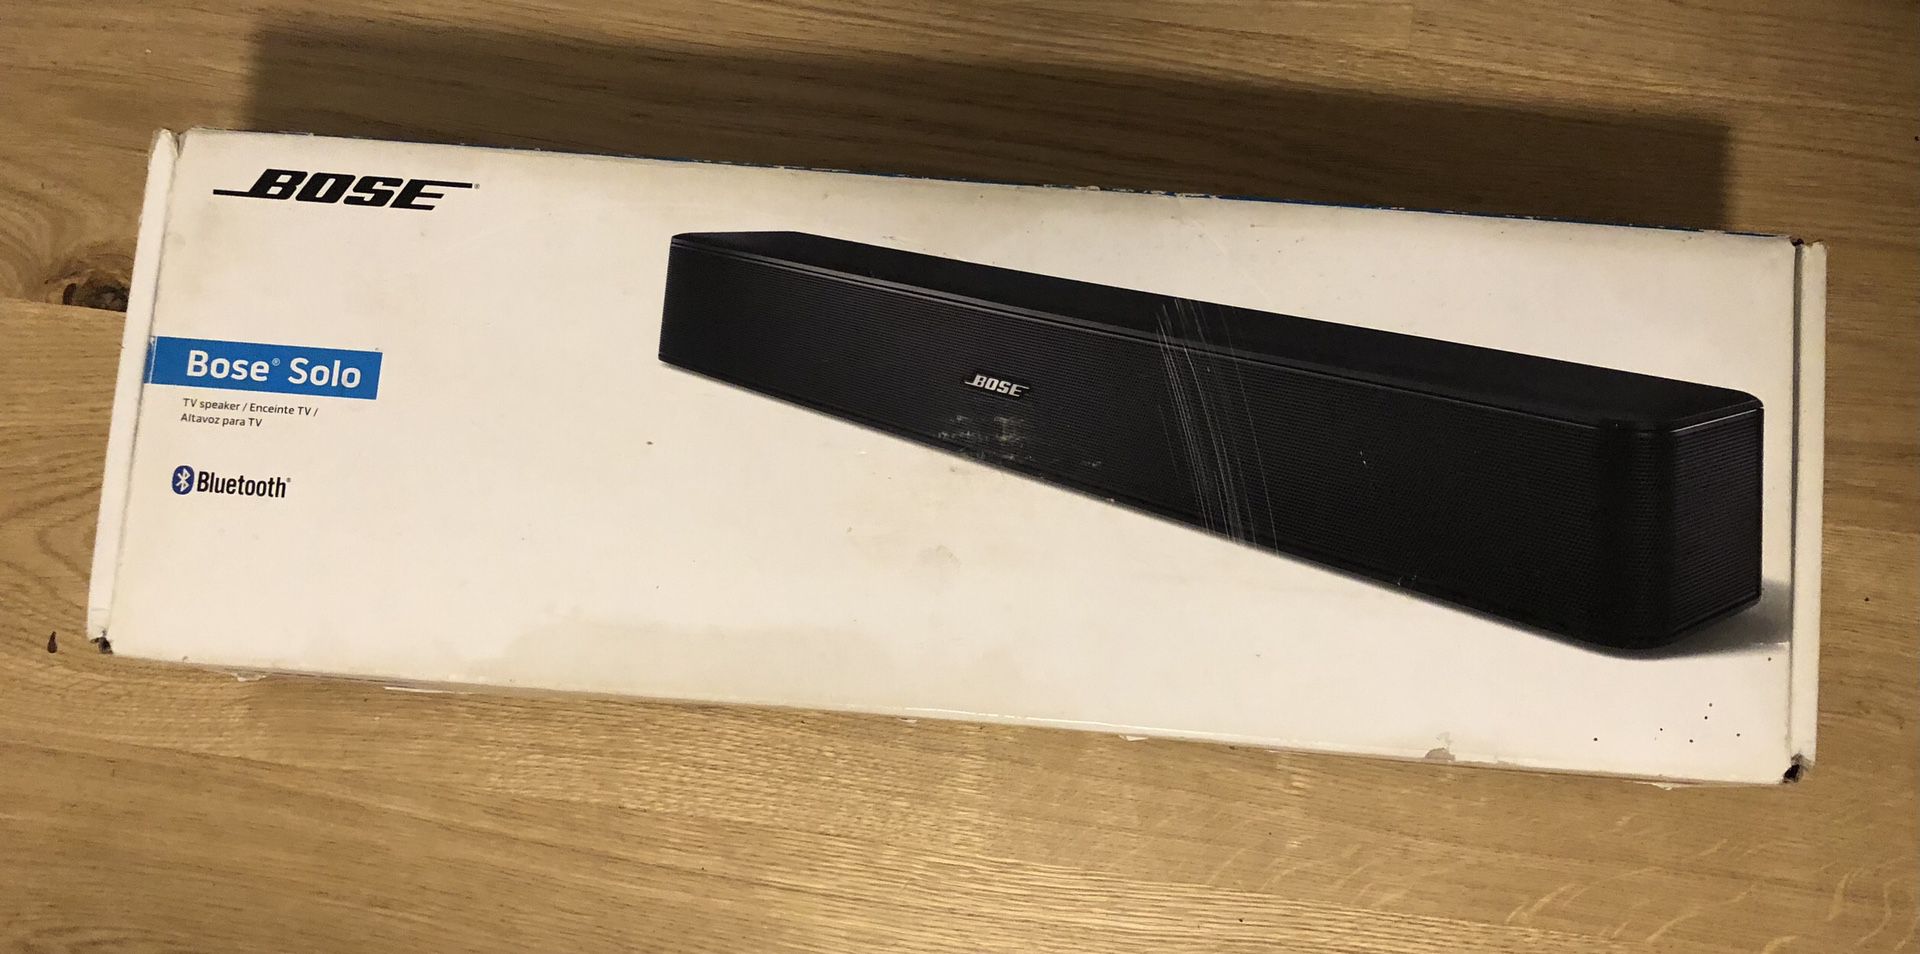 Bose Solo TV Speaker Soundbar Model 418775  Brand New “No Remote*